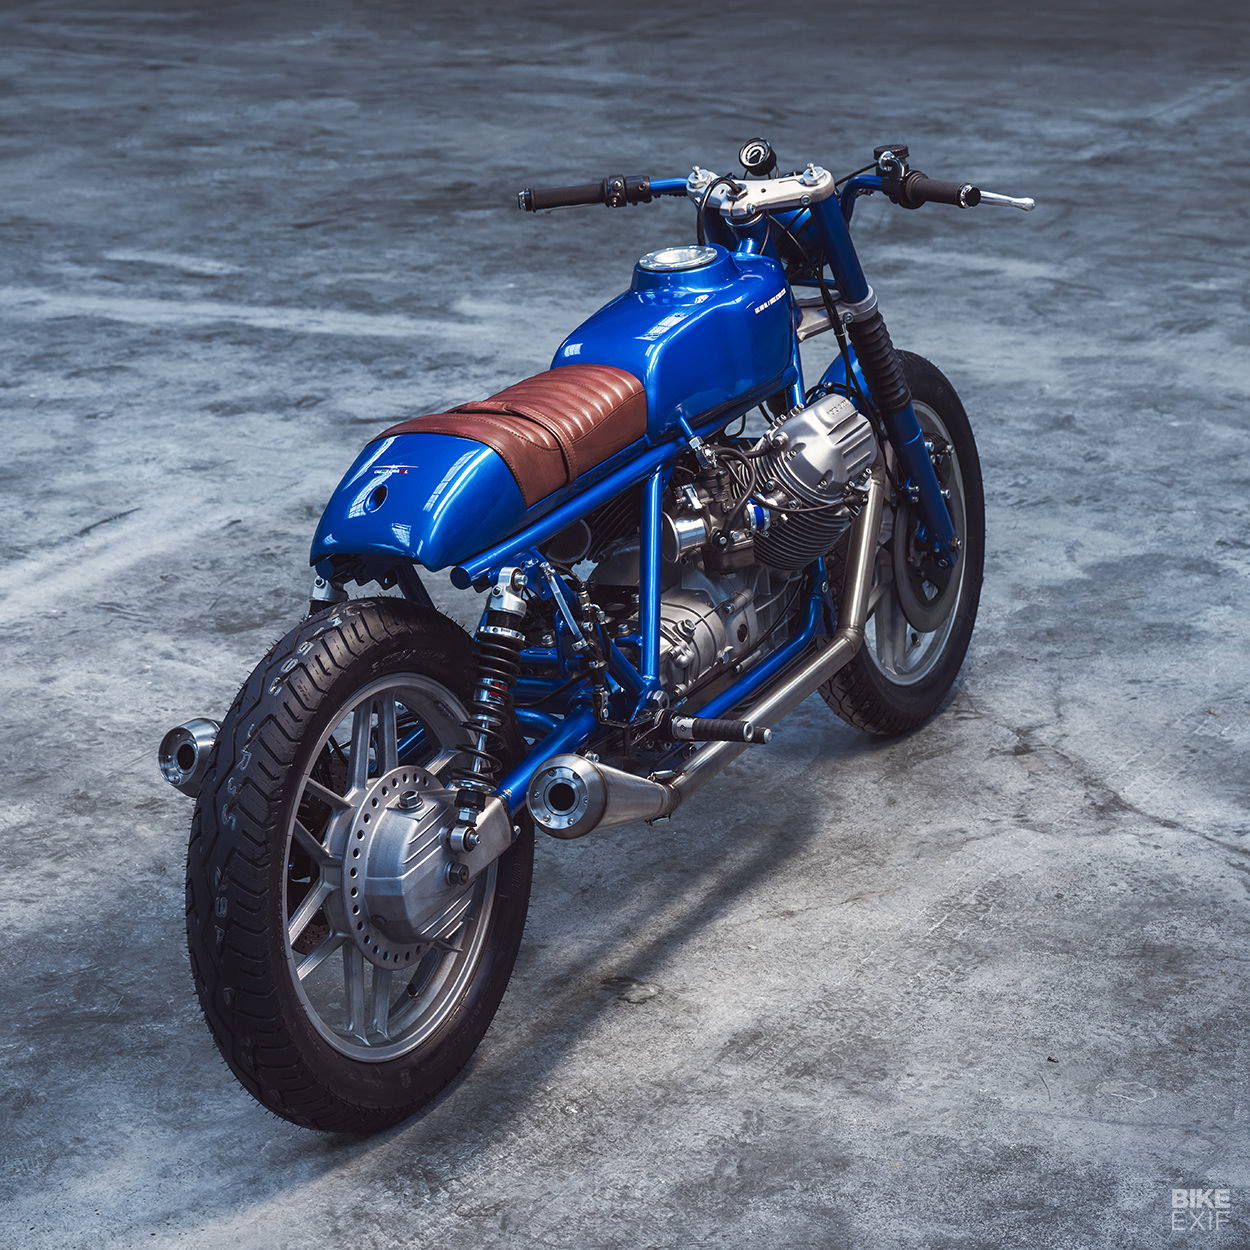 Moto Guzzi SP1000 by Gas & Oil Bespoke Motorcycles